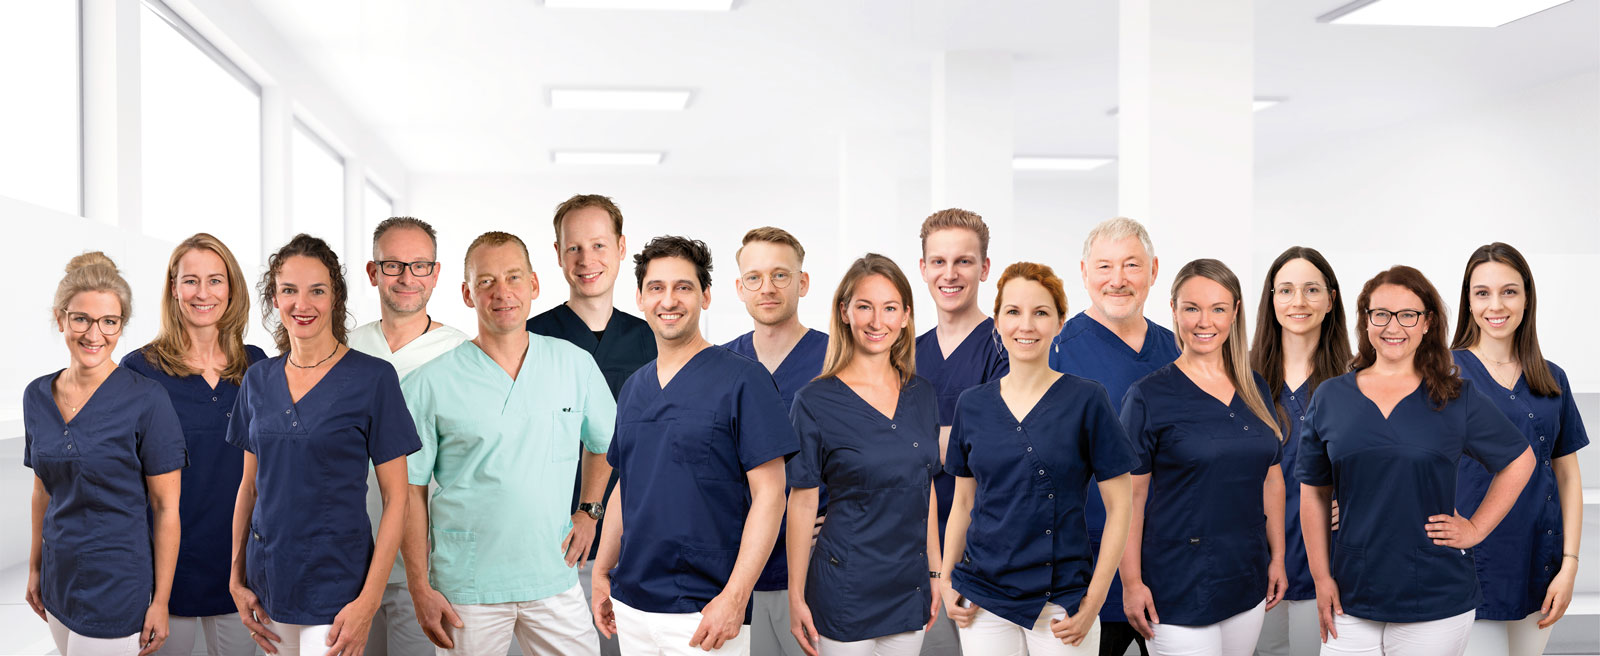 Teamfoto unserer Zahnärzte bei Zahnärzte MG Mönchengladbach